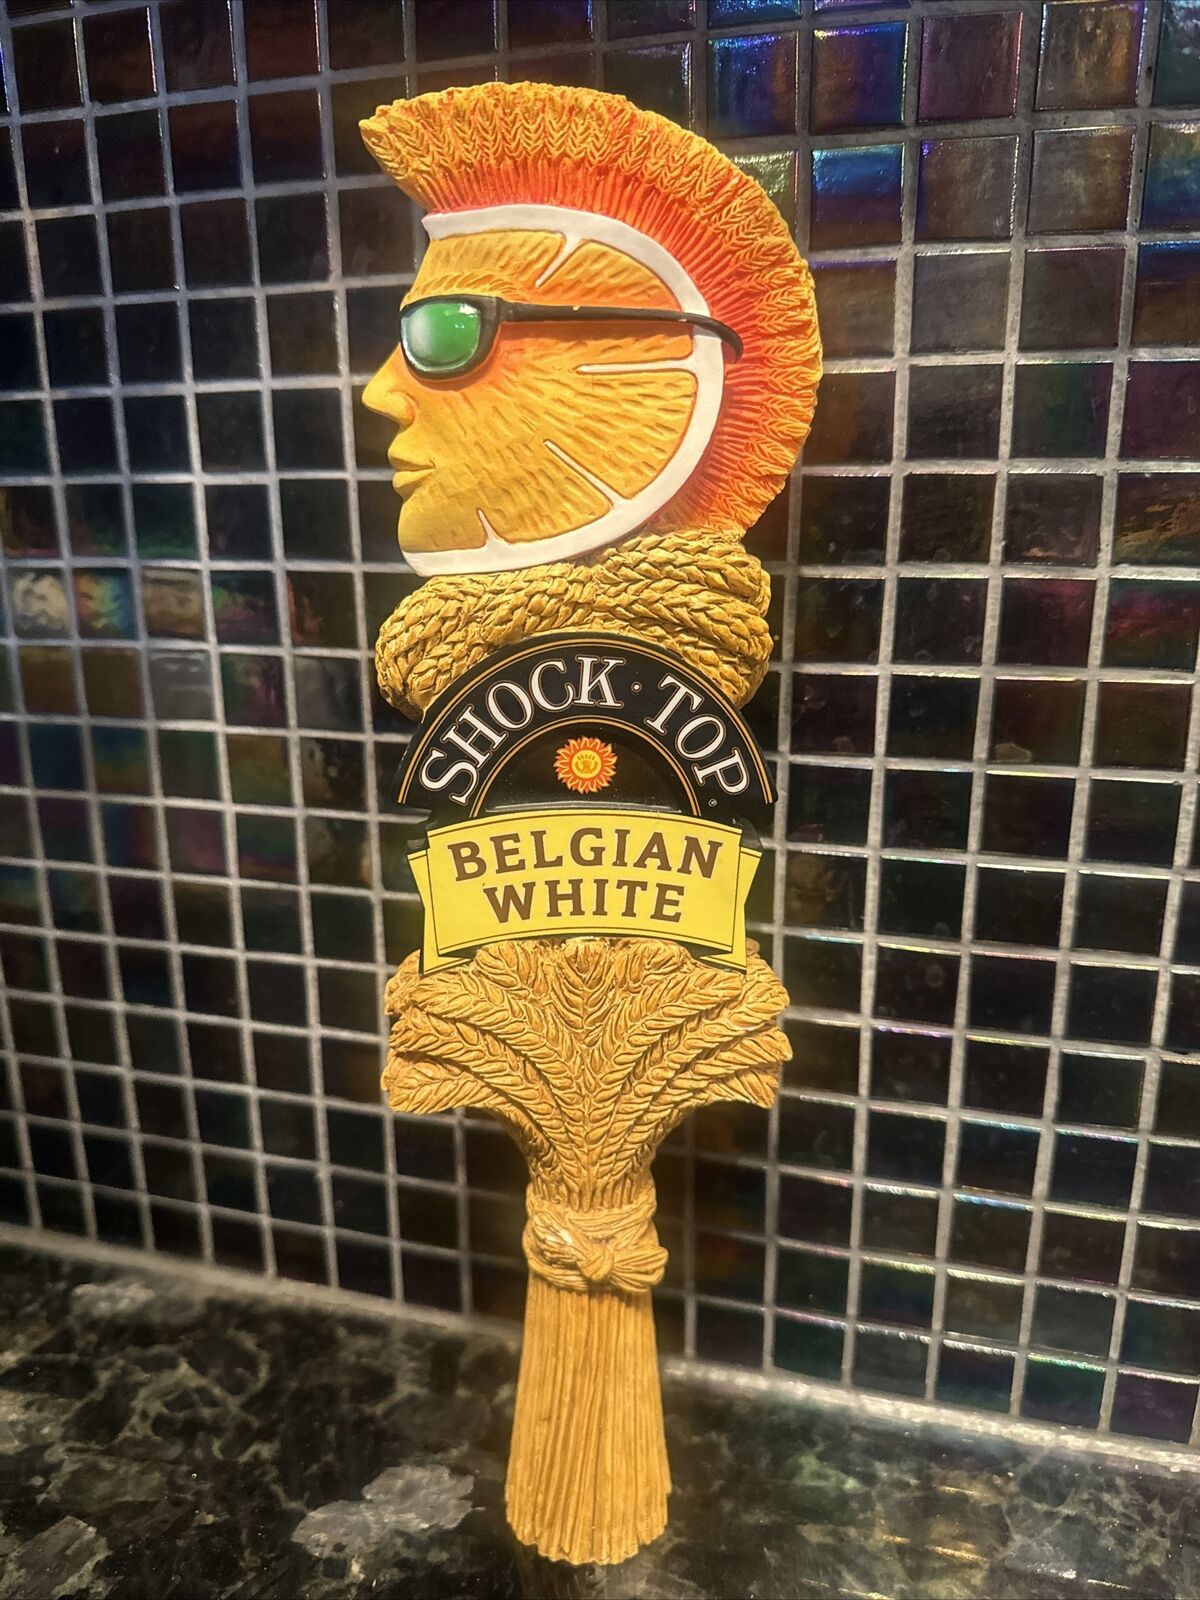 Shock Top Belgian White Tap Handle Orange Beer Keg Man Cave NEW/MINT NICE